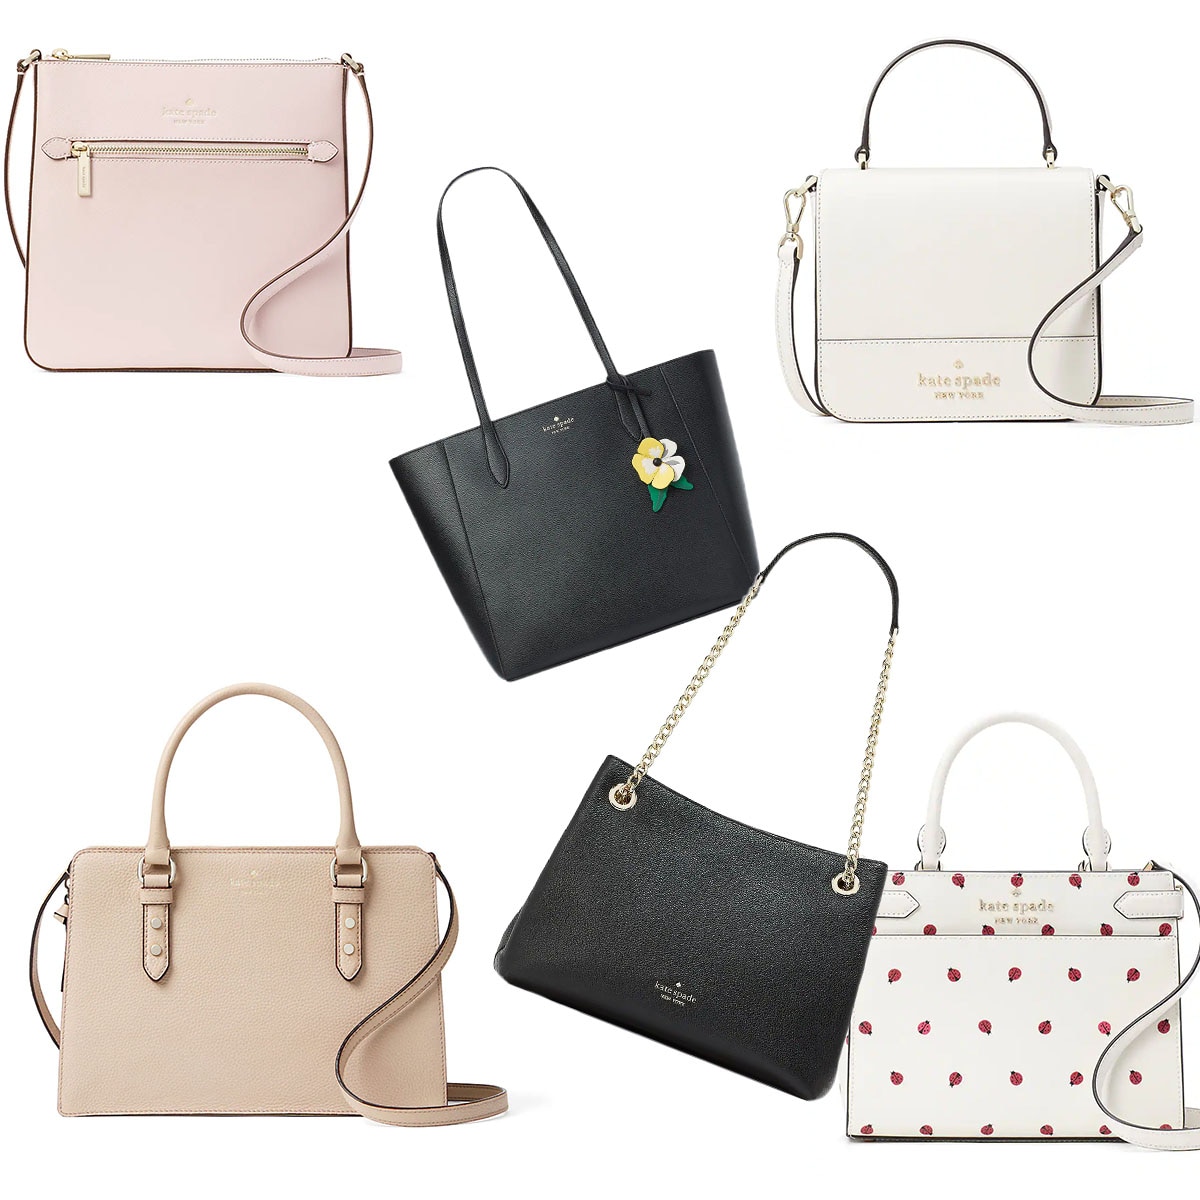 Designer Belt Bags, Fanny Packs on Sale | Kate Spade Outlet